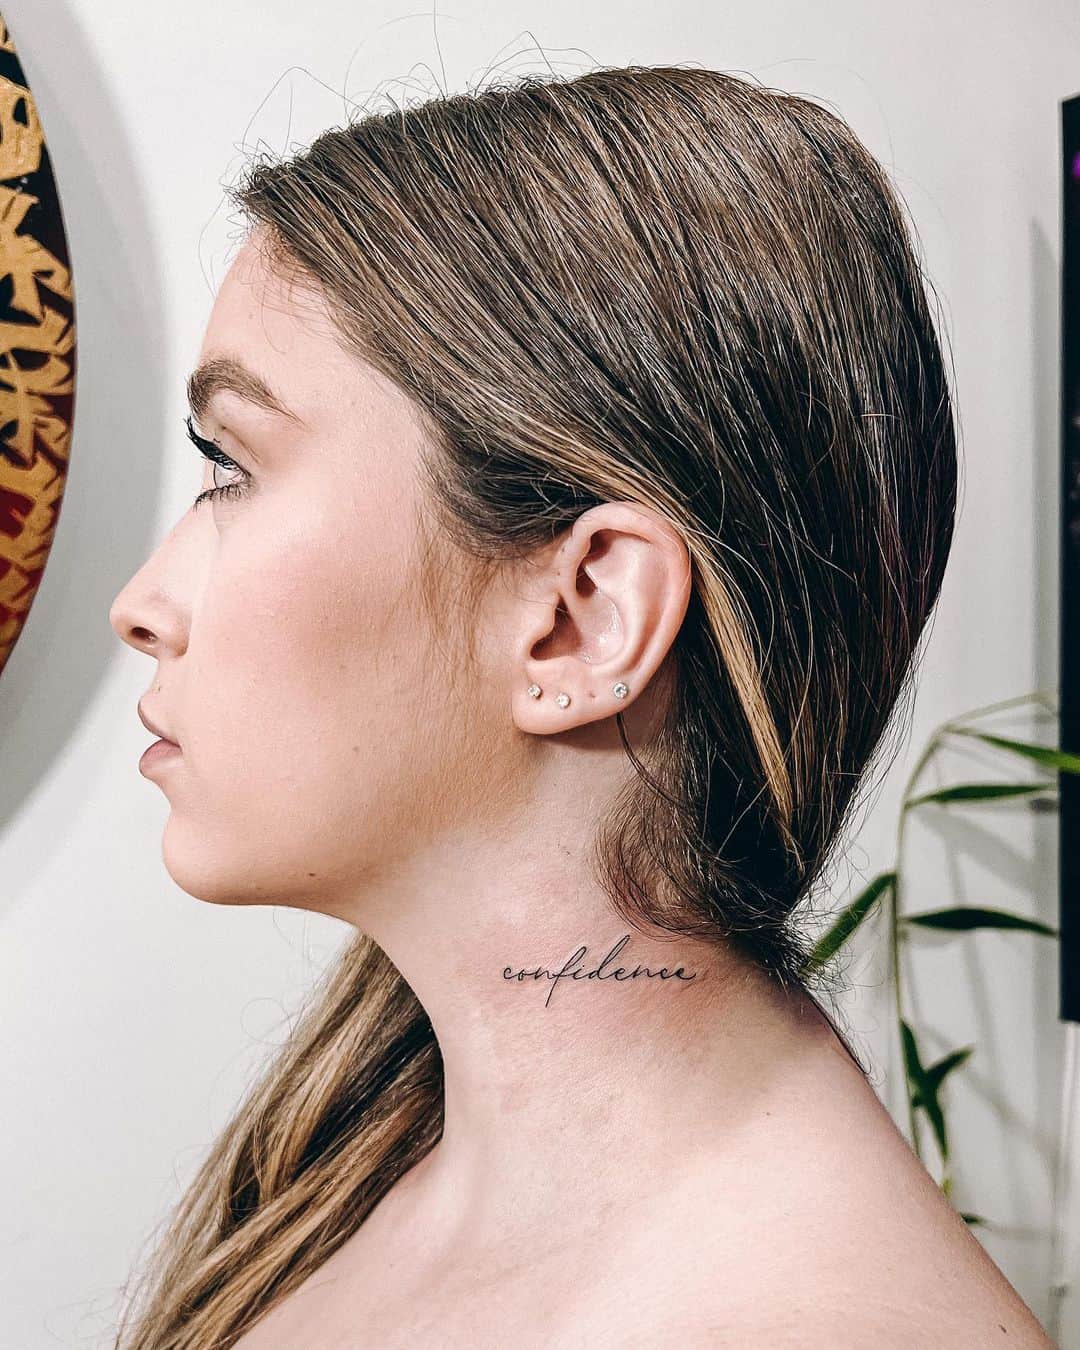 Neck Tattoos for Women [Latest] - Tattoosforgirl.com - Tattoos for Girls